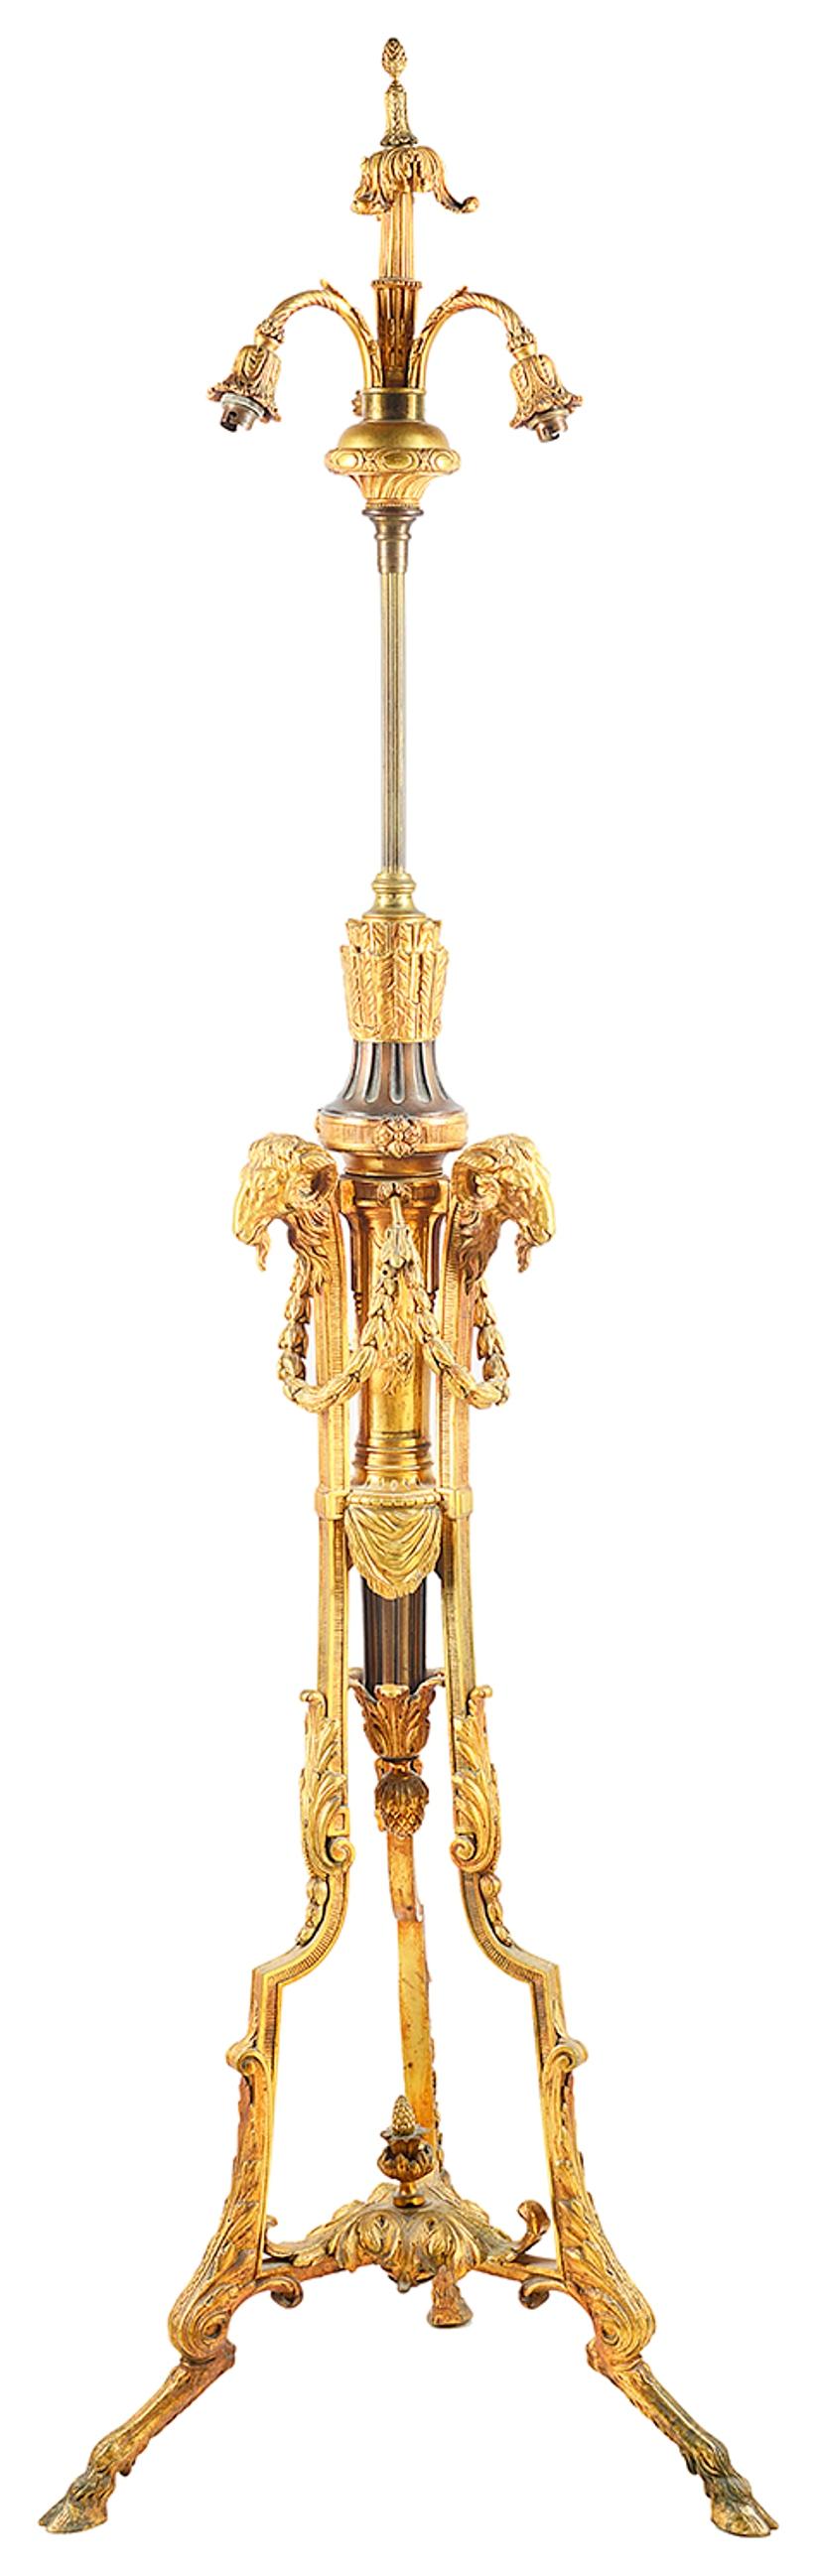 Lampe à poser de bonne qualité, datant de la fin du 19e siècle, en bronze et bronze doré, avec une tête de bélier, une houppe, et des montures de feuillage défilant, se terminant par des pieds en forme de sabots.